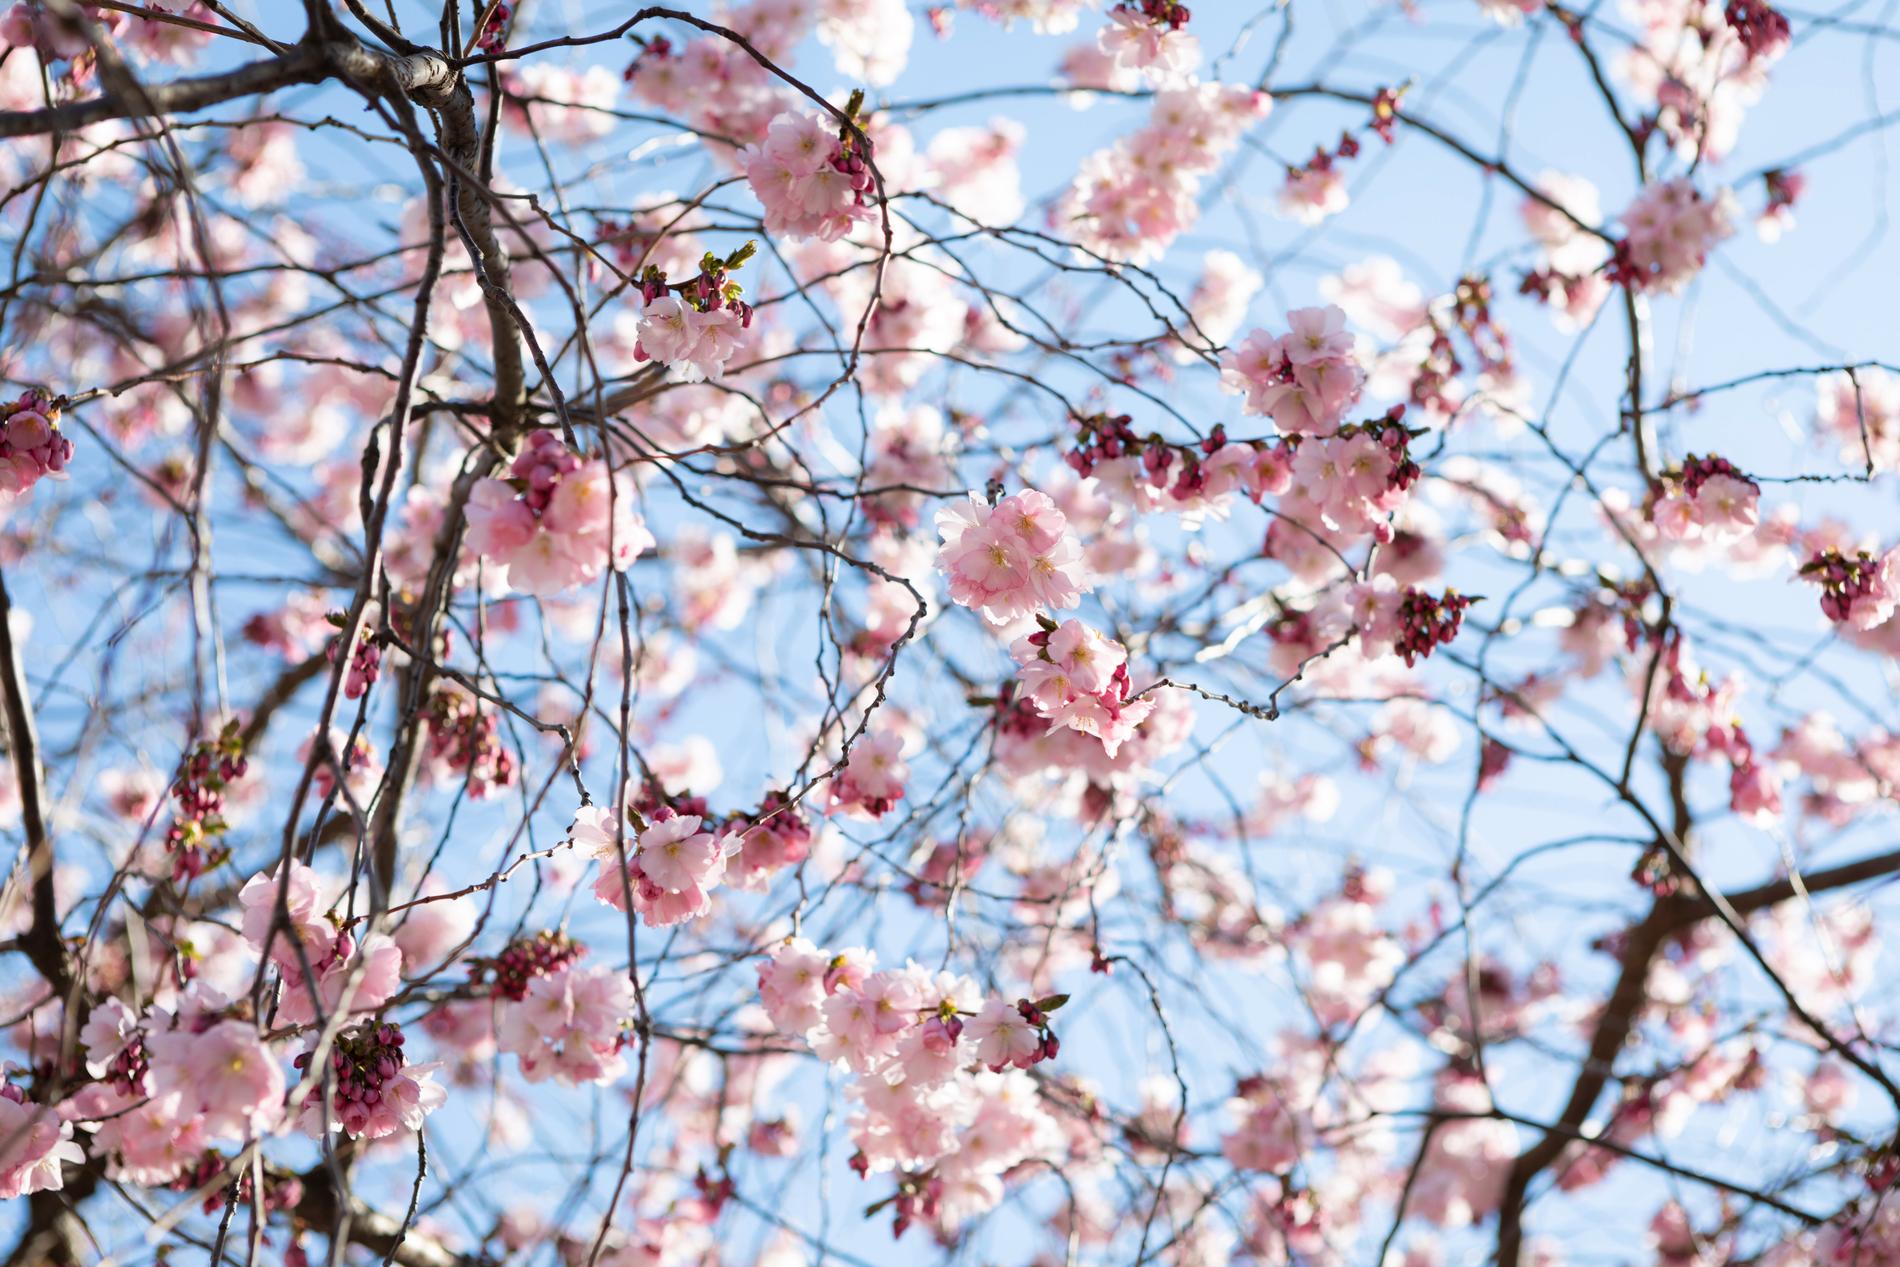 Körsbärsträden i blom våren 2019. 